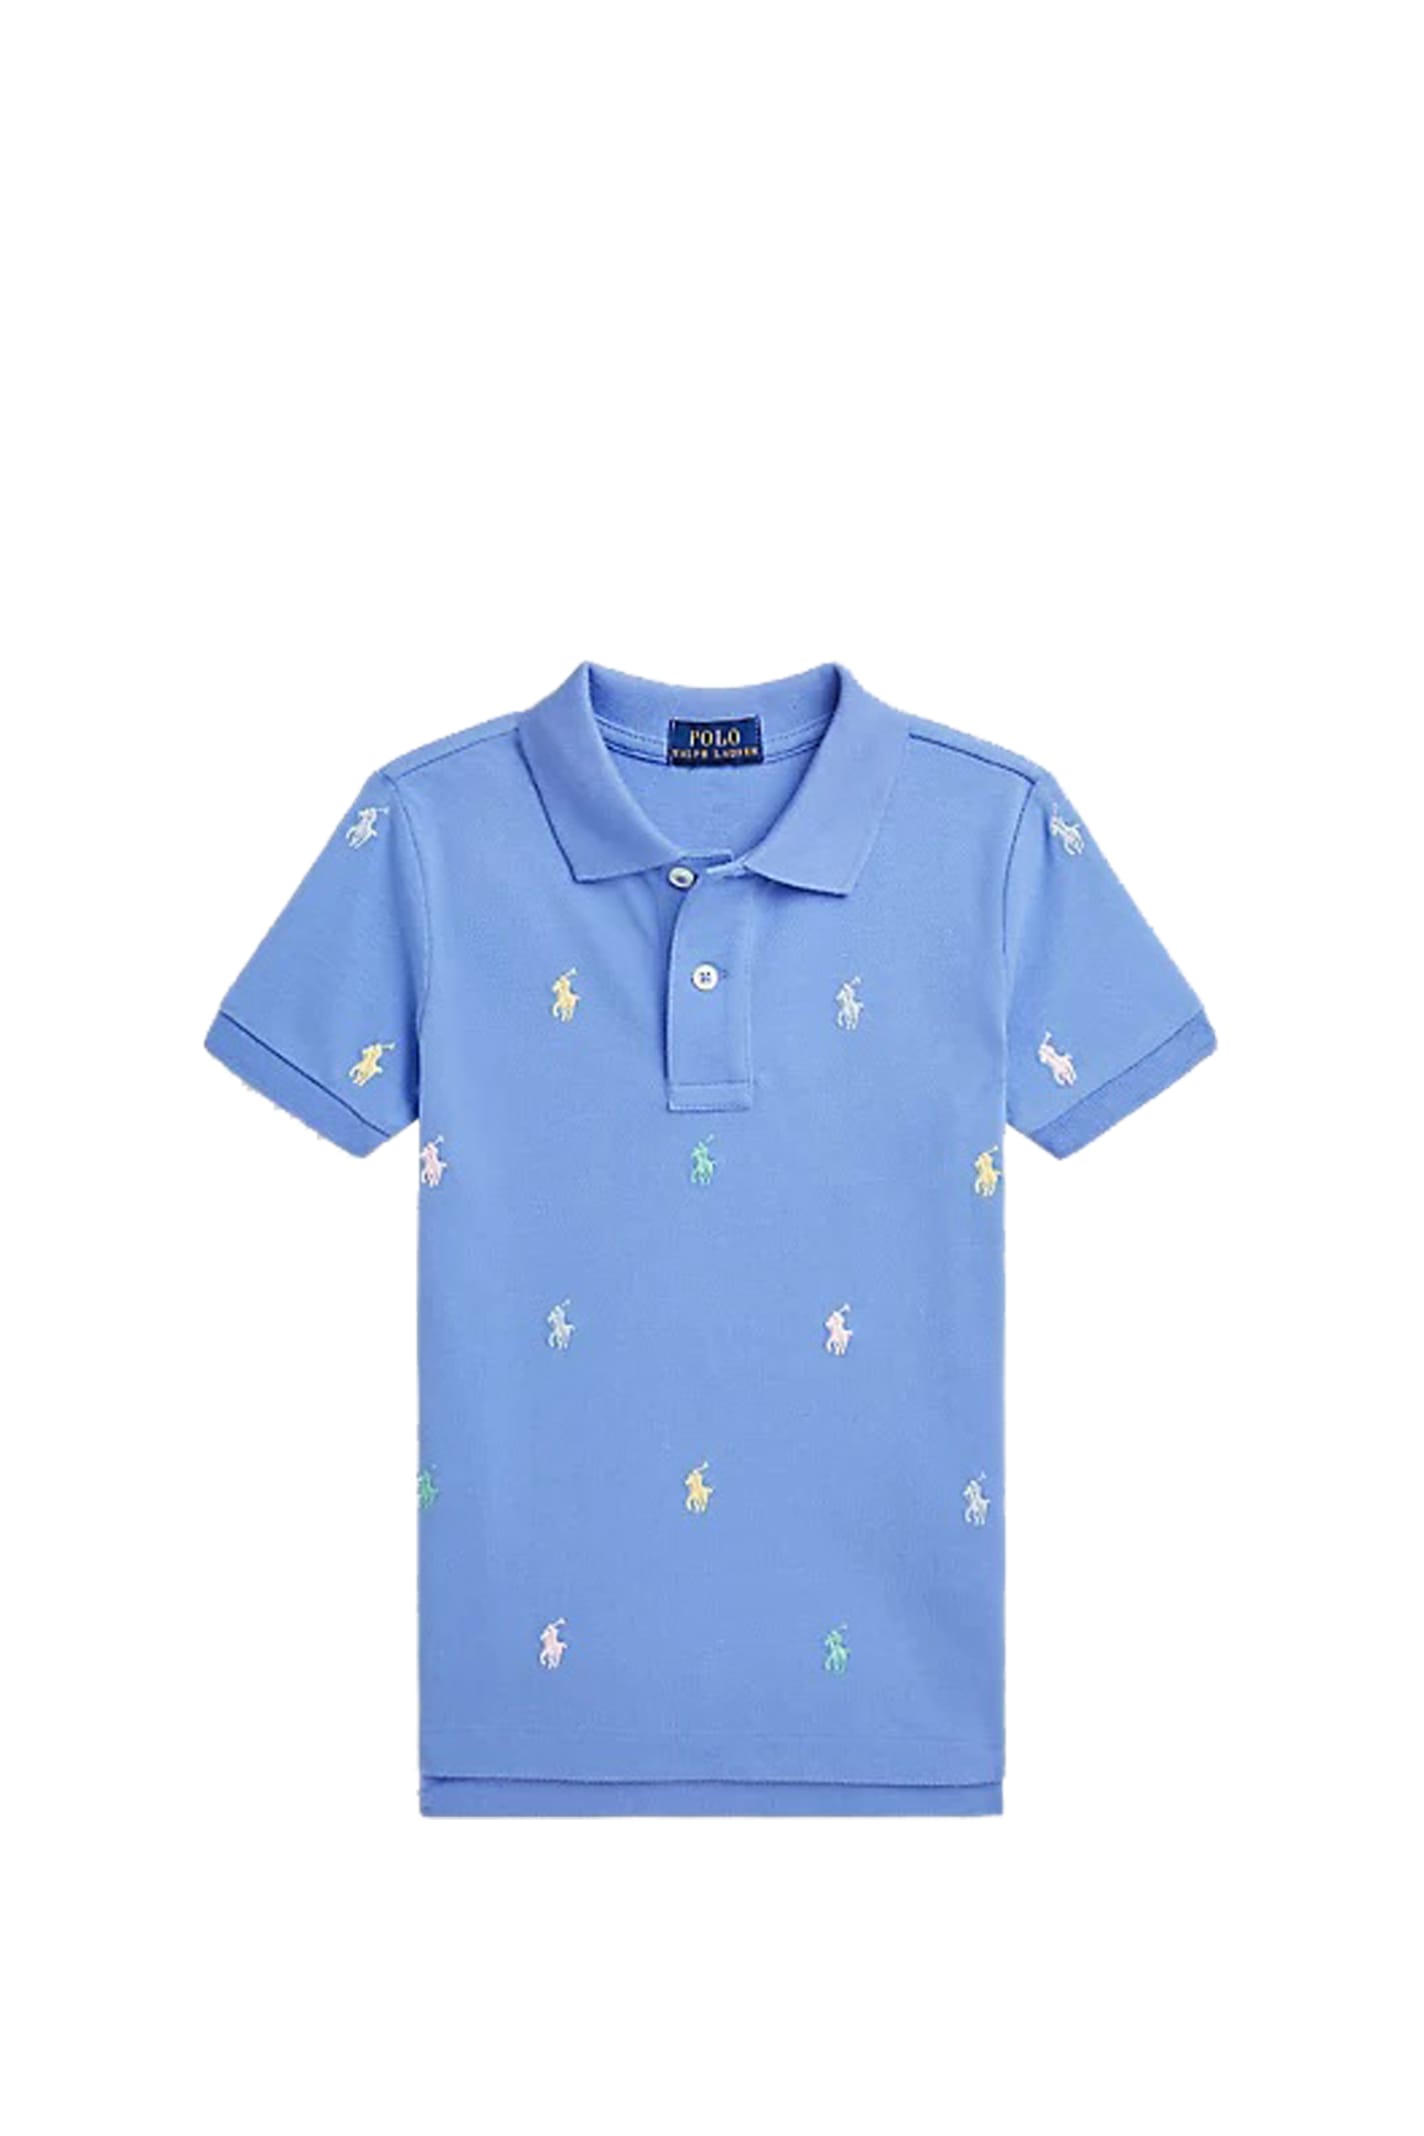 Ralph Lauren Kids' Polo T-shirt In Blue